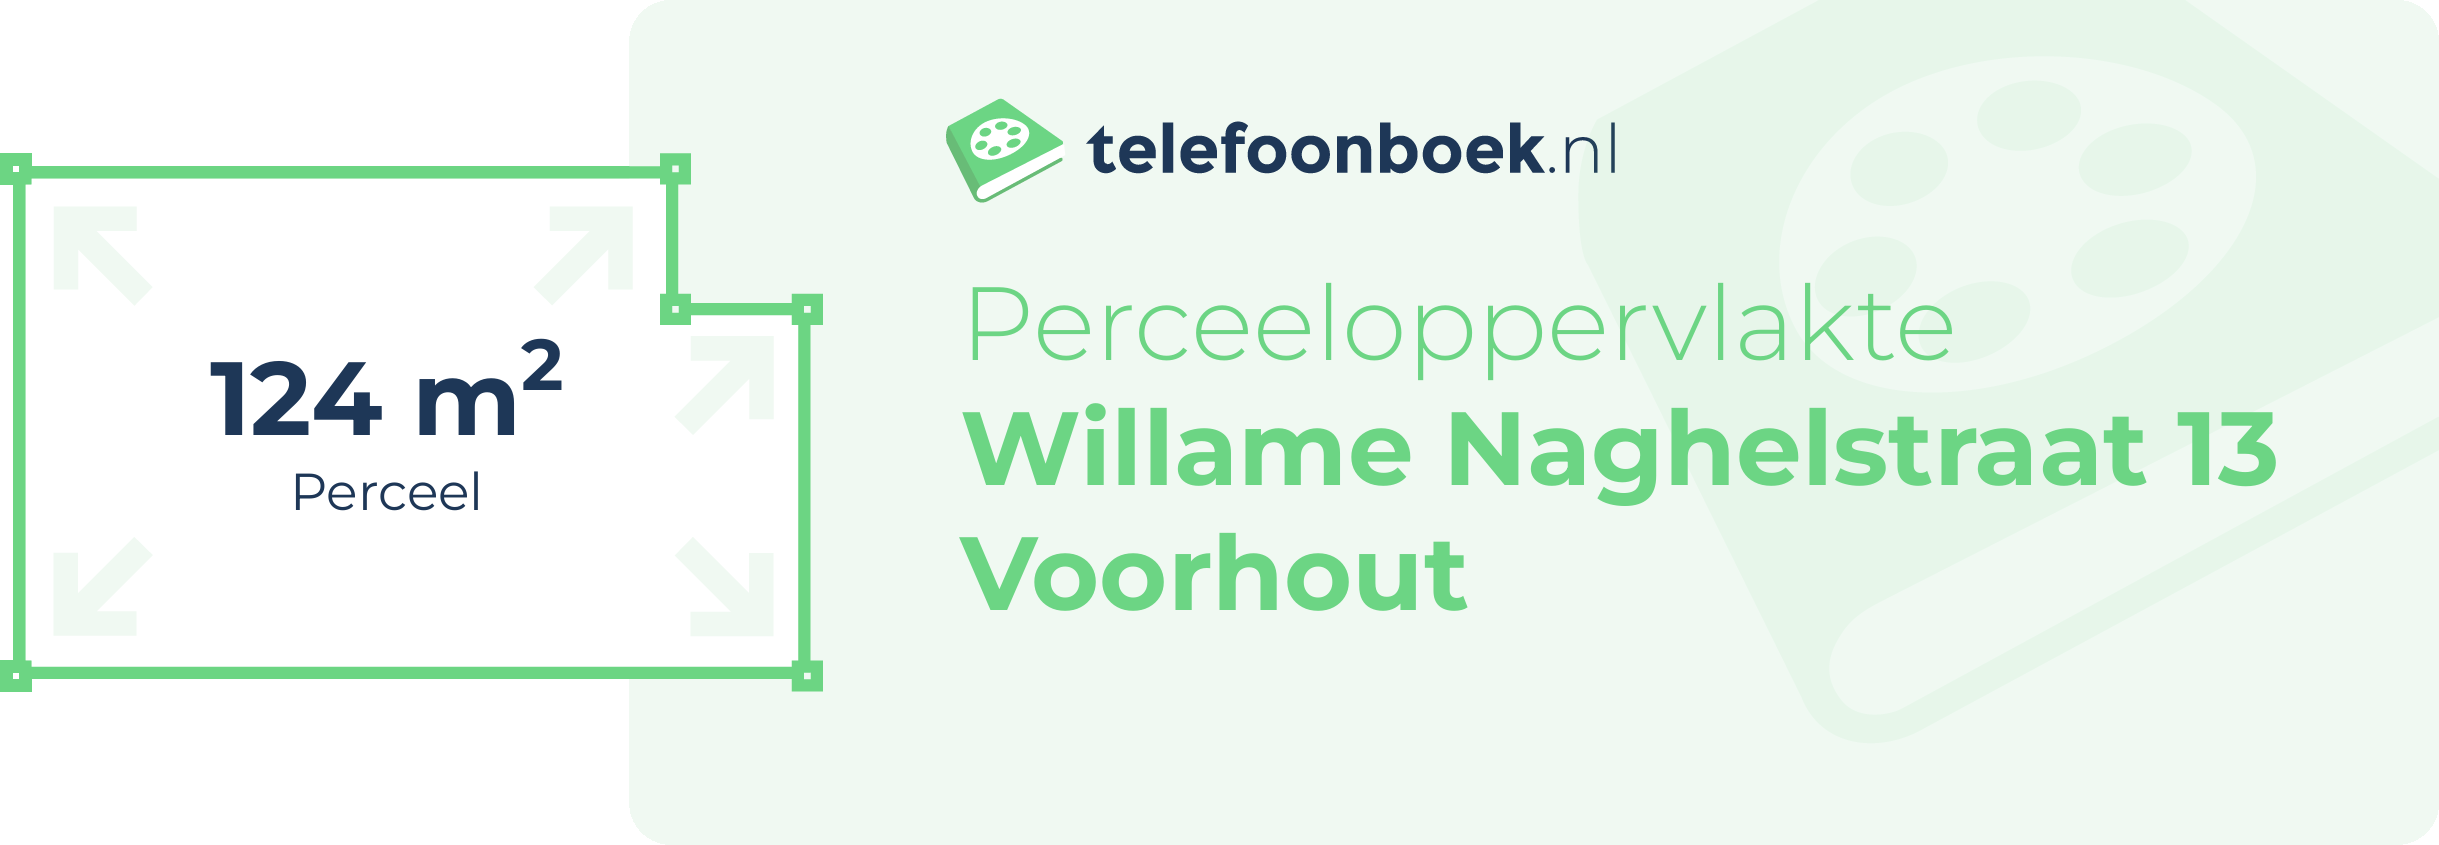 Perceeloppervlakte Willame Naghelstraat 13 Voorhout